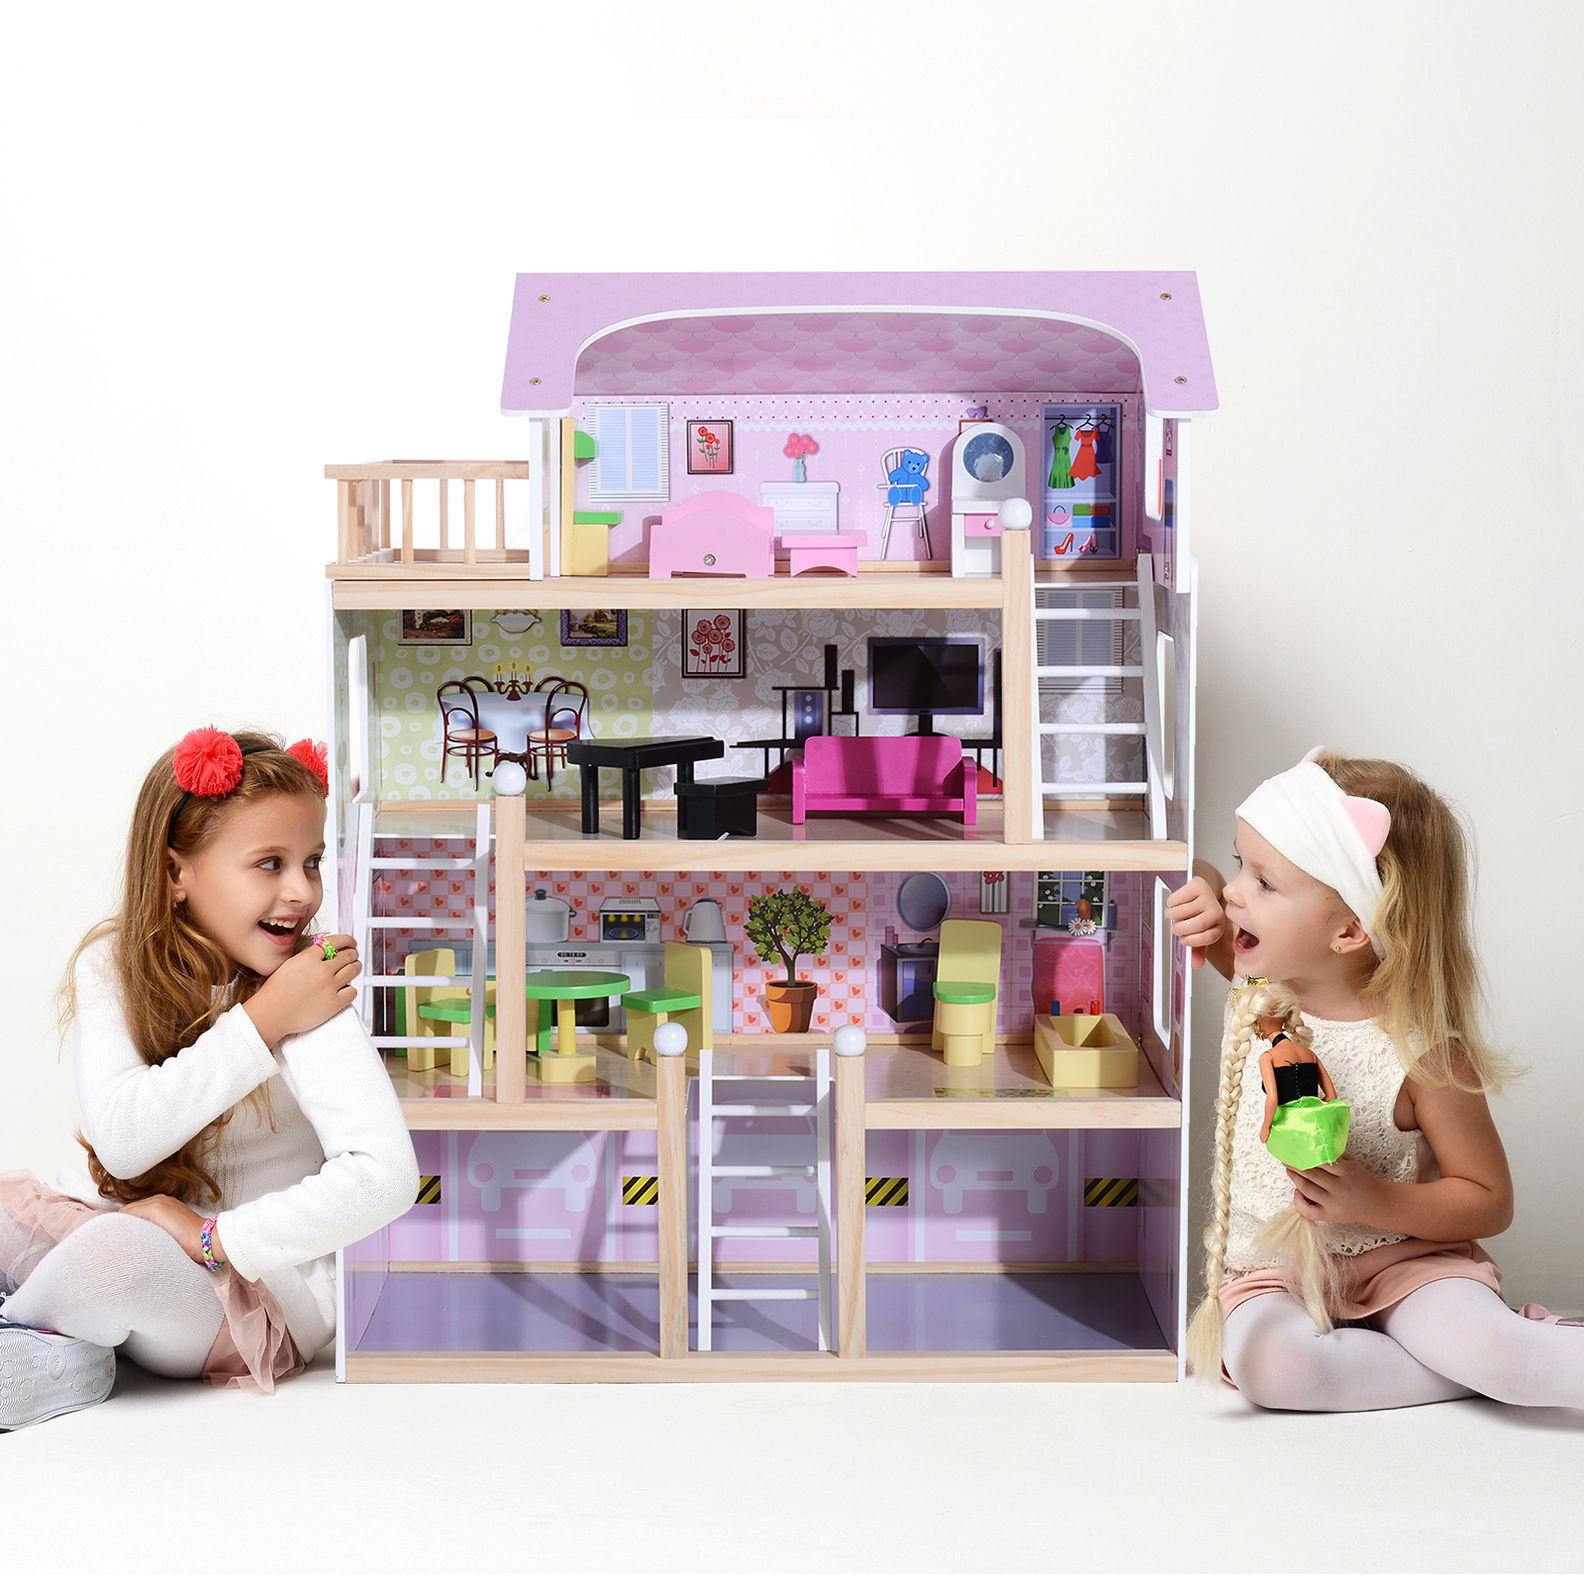 Kinder Puppenhaus mit Möbeln jetzt bei Weltbild.de bestellen